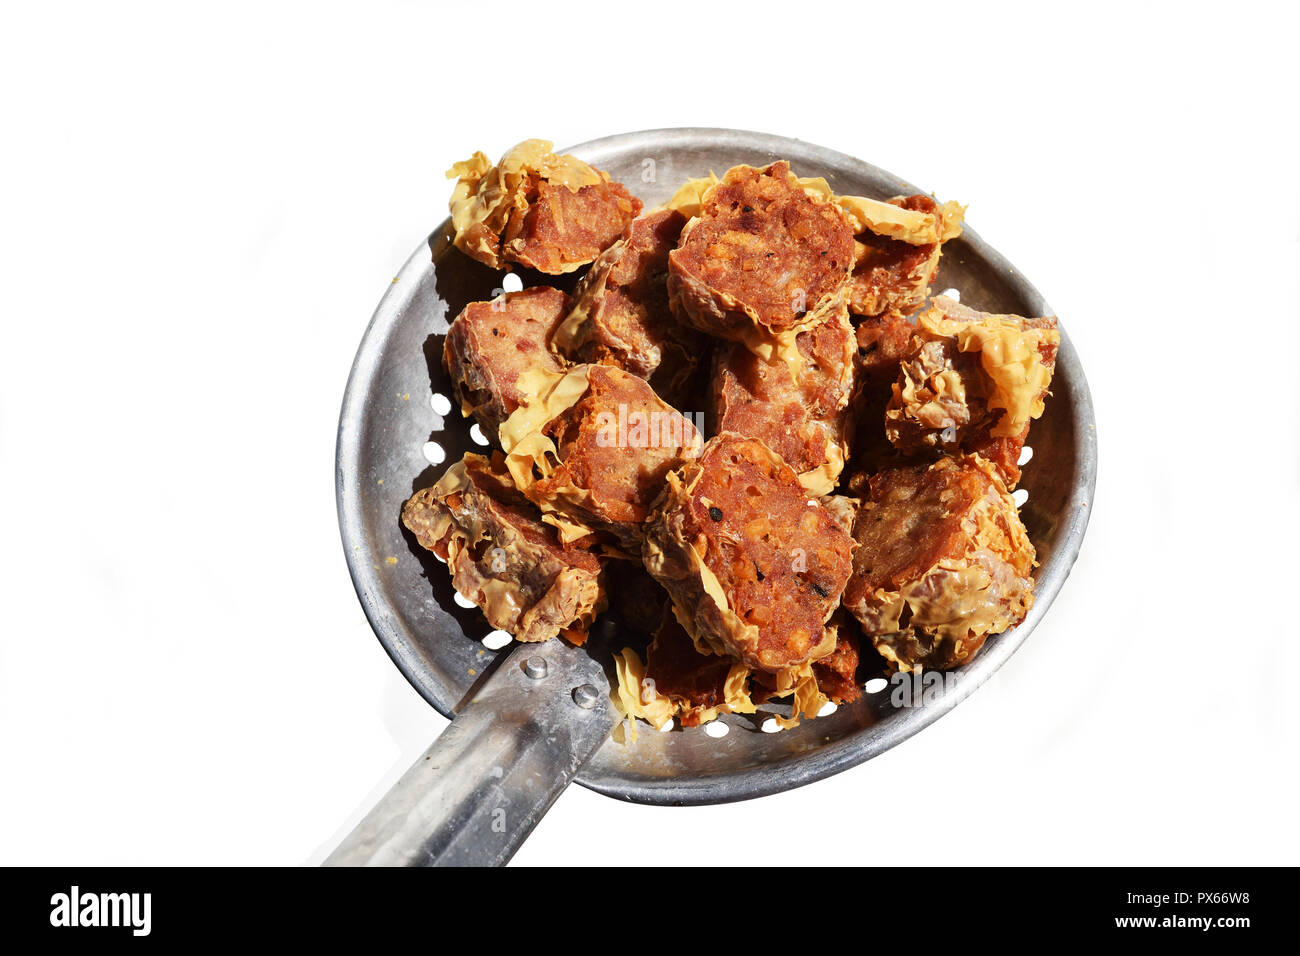 La viande de crabe frit rouleaux ou Hoi An Jo dans une passoire , nourriture chinoise traditionnelle locale pour apéritif sur fond blanc Banque D'Images